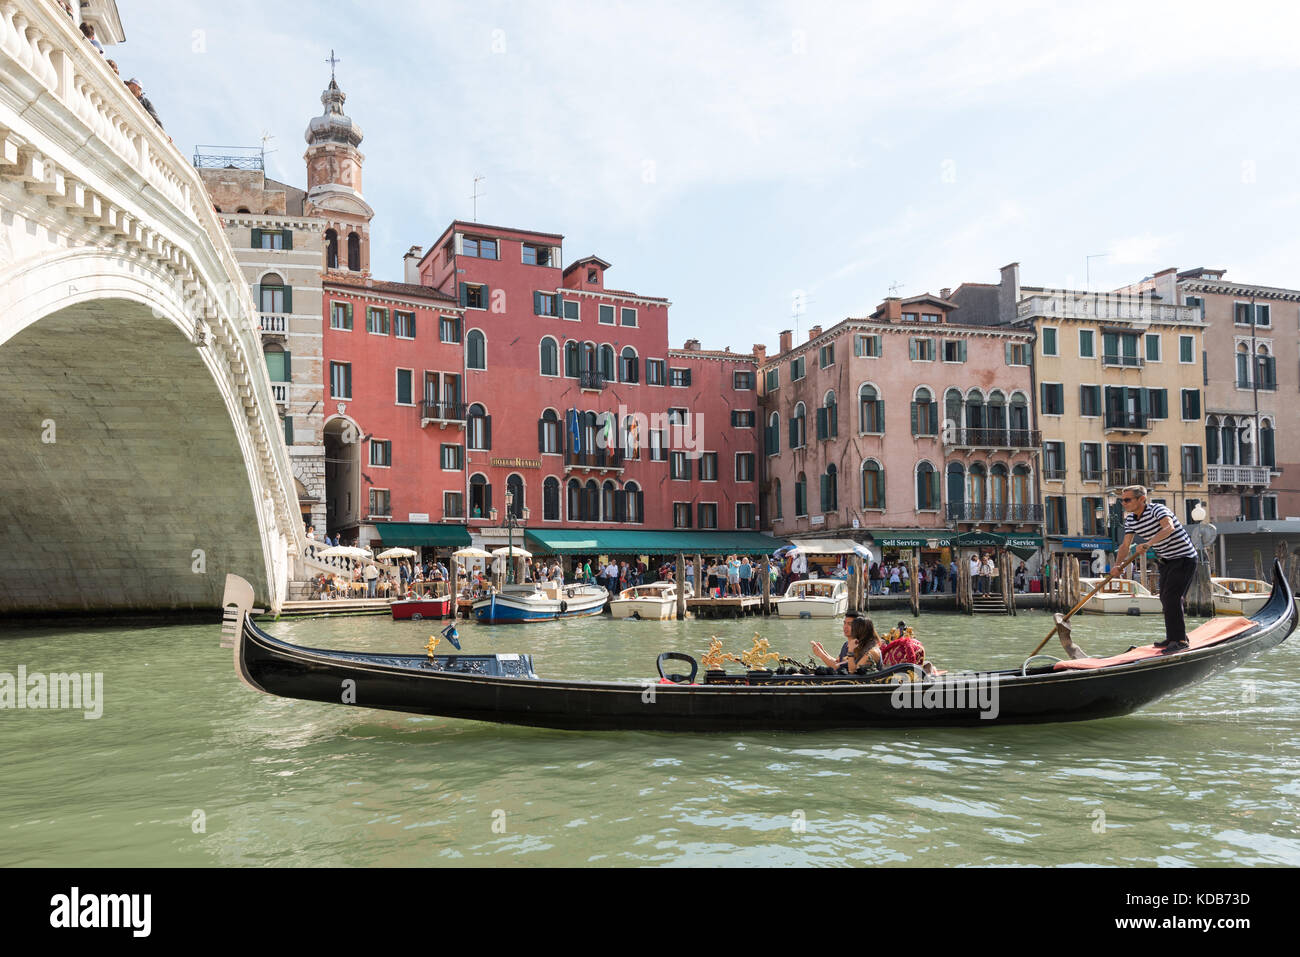 Venedig, Italien, 29. September 2017: die berühmte Ponte di Rialto (Rialtobrücke) mit traditionellen Gondel in Venedig, Italien. Stockfoto